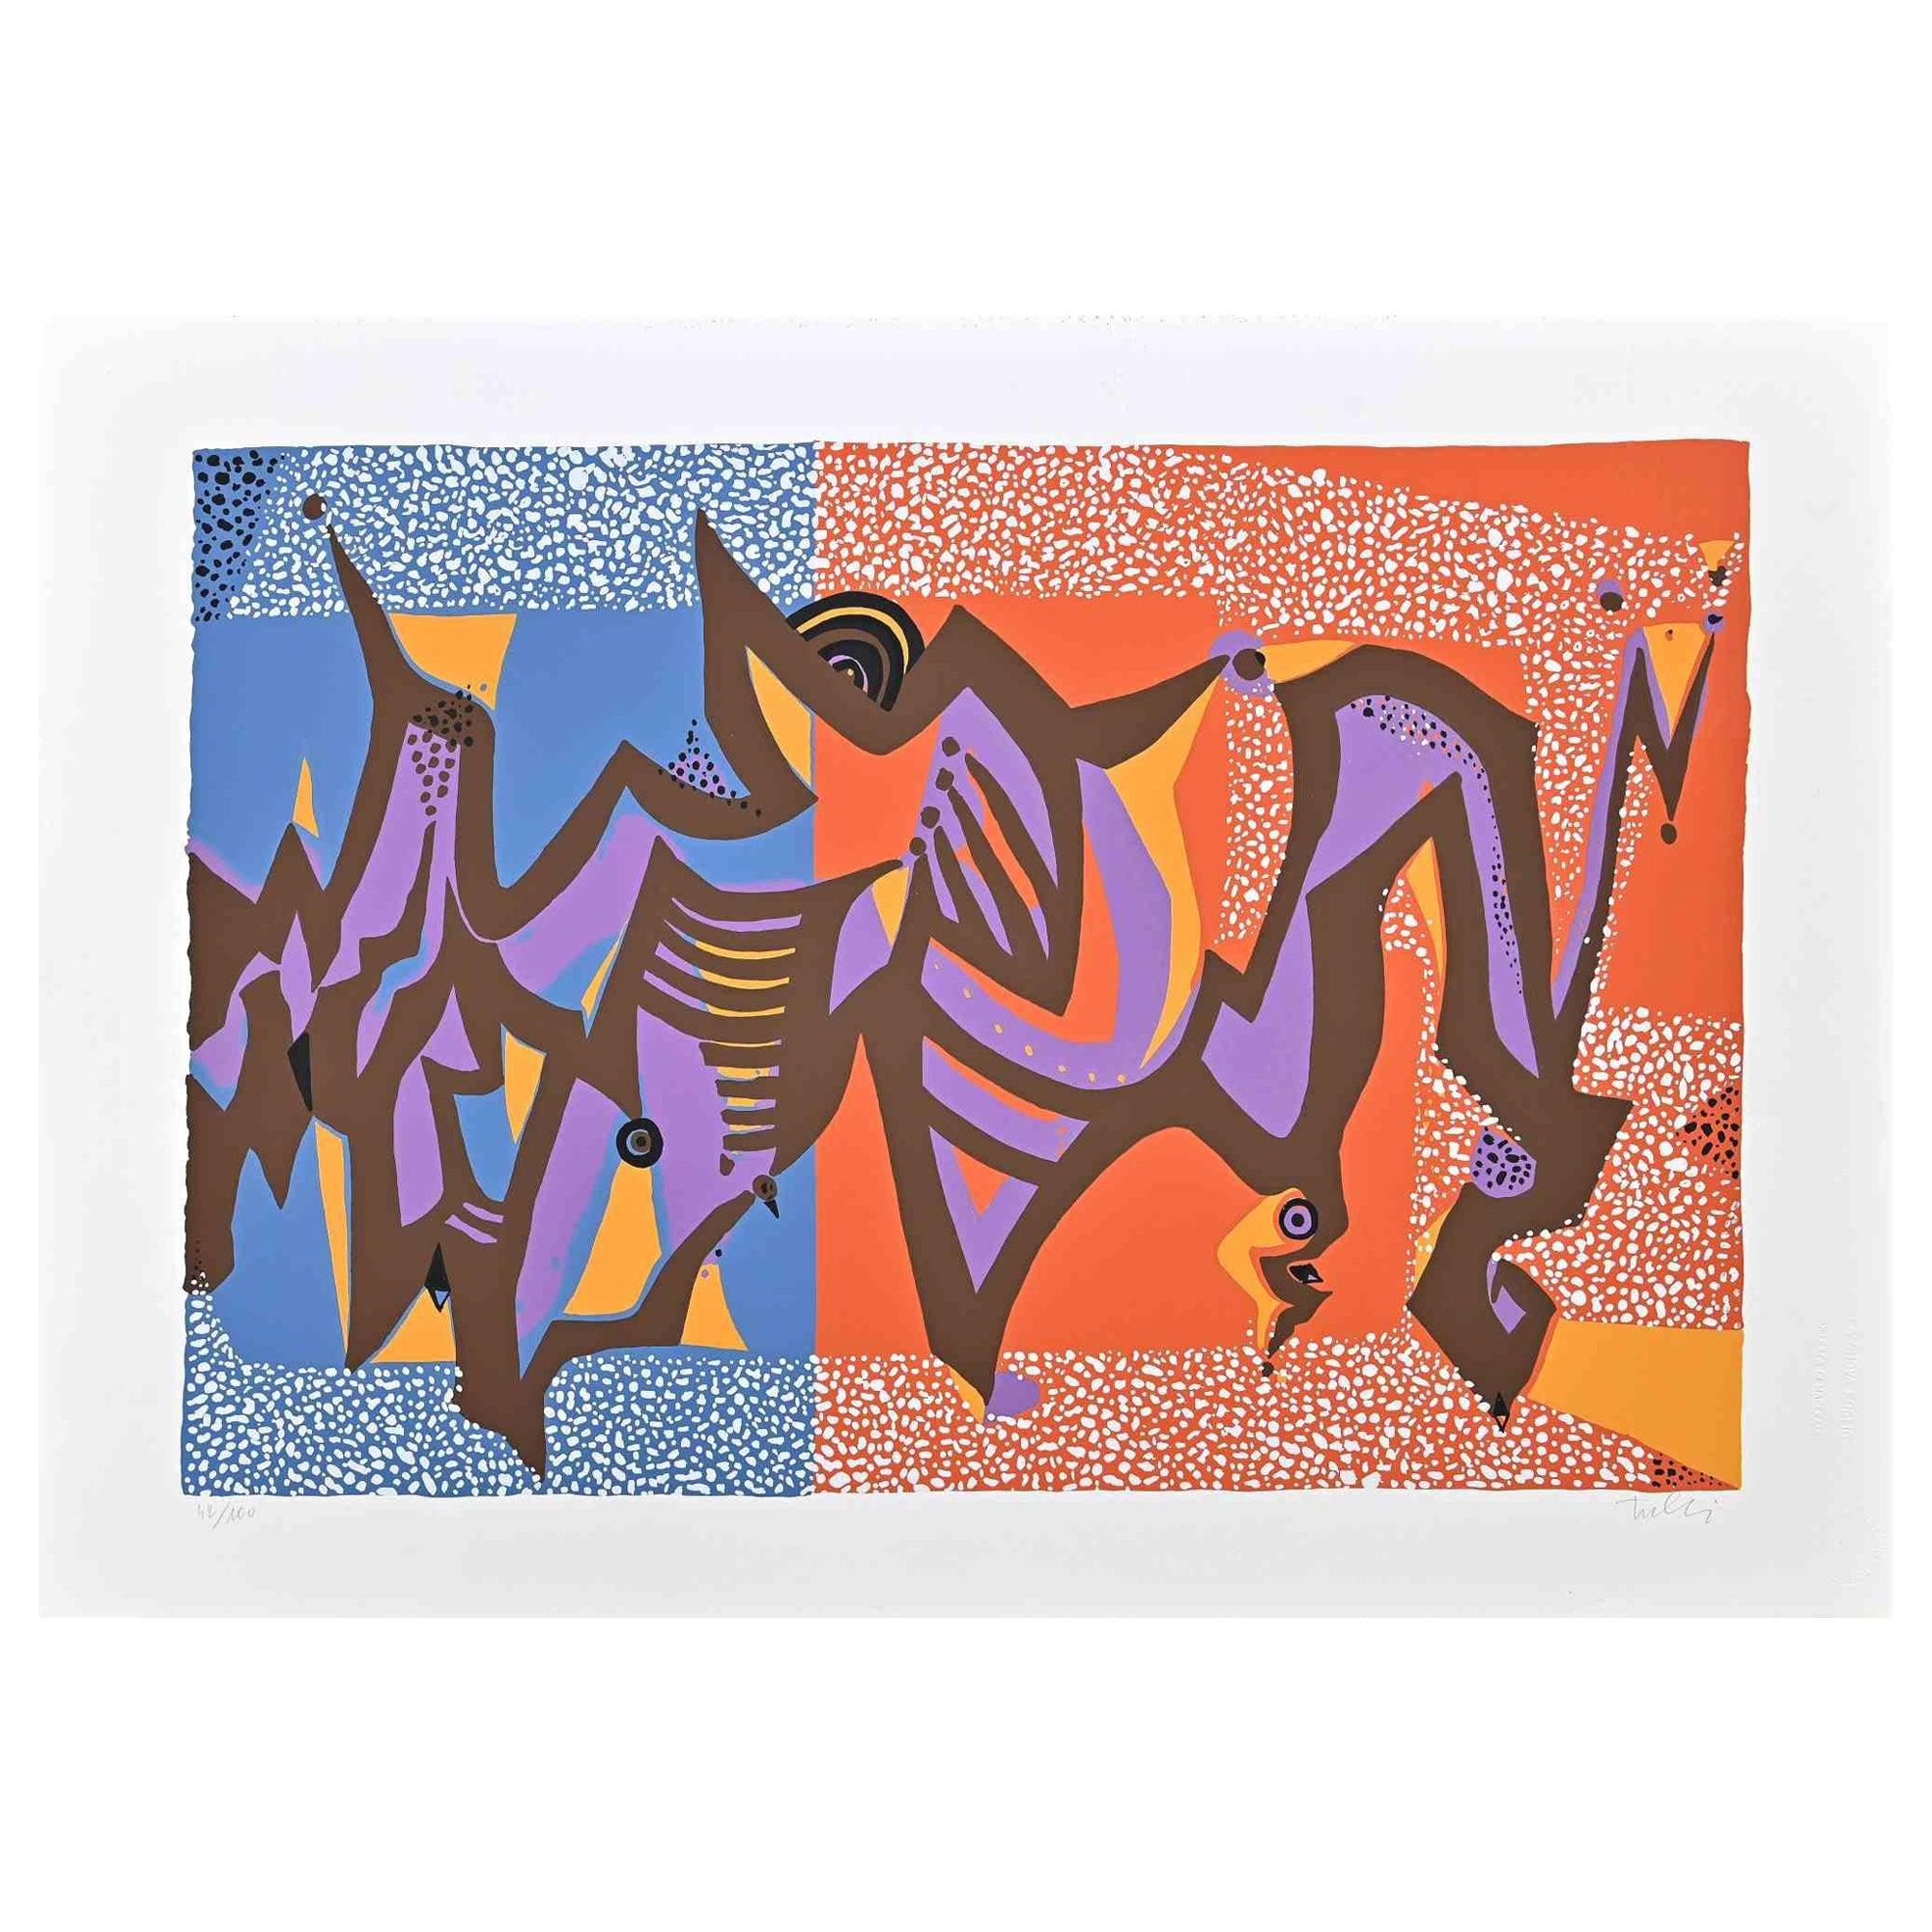 Composition carnavalesque est une sérigraphie colorée sur papier, réalisée dans les années 1970 par l'artiste italien Wladimiro Tulli.
Signé à la main en bas à droite et numéroté au crayon dans la marge inférieure. Edition de 42/100 tirages.

Une